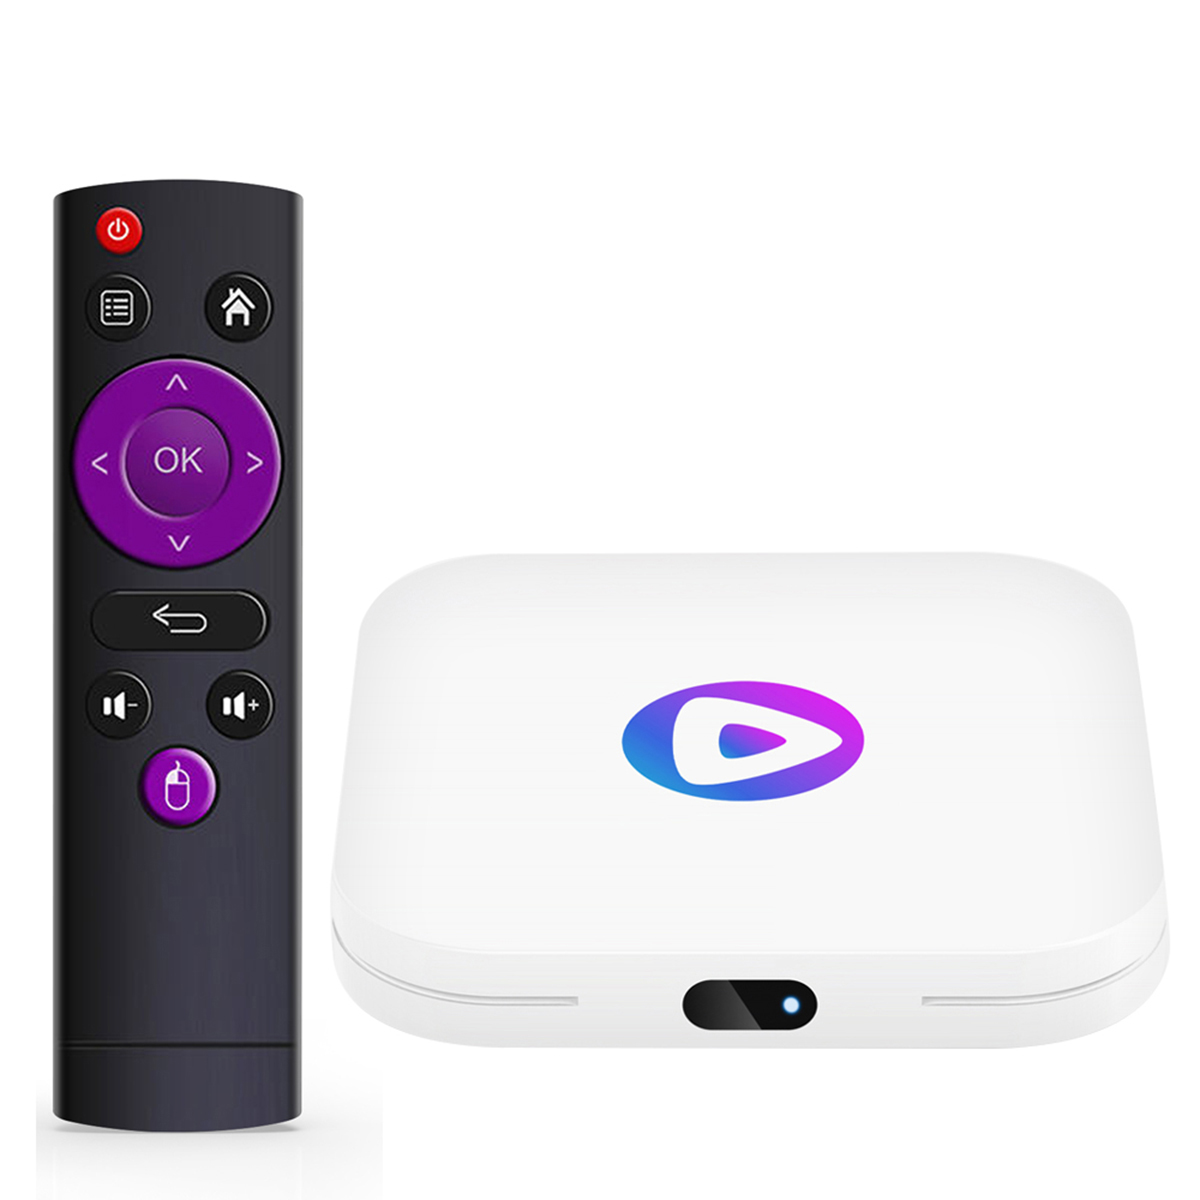 Tv Box Multimedia Klack Con Android 10 Rk3228a Quad Core 1.46 Ghz,  Convierte Tu Televisor En Una Smart Tv De Última Generación, 2gb Ram, 16gb  Rom